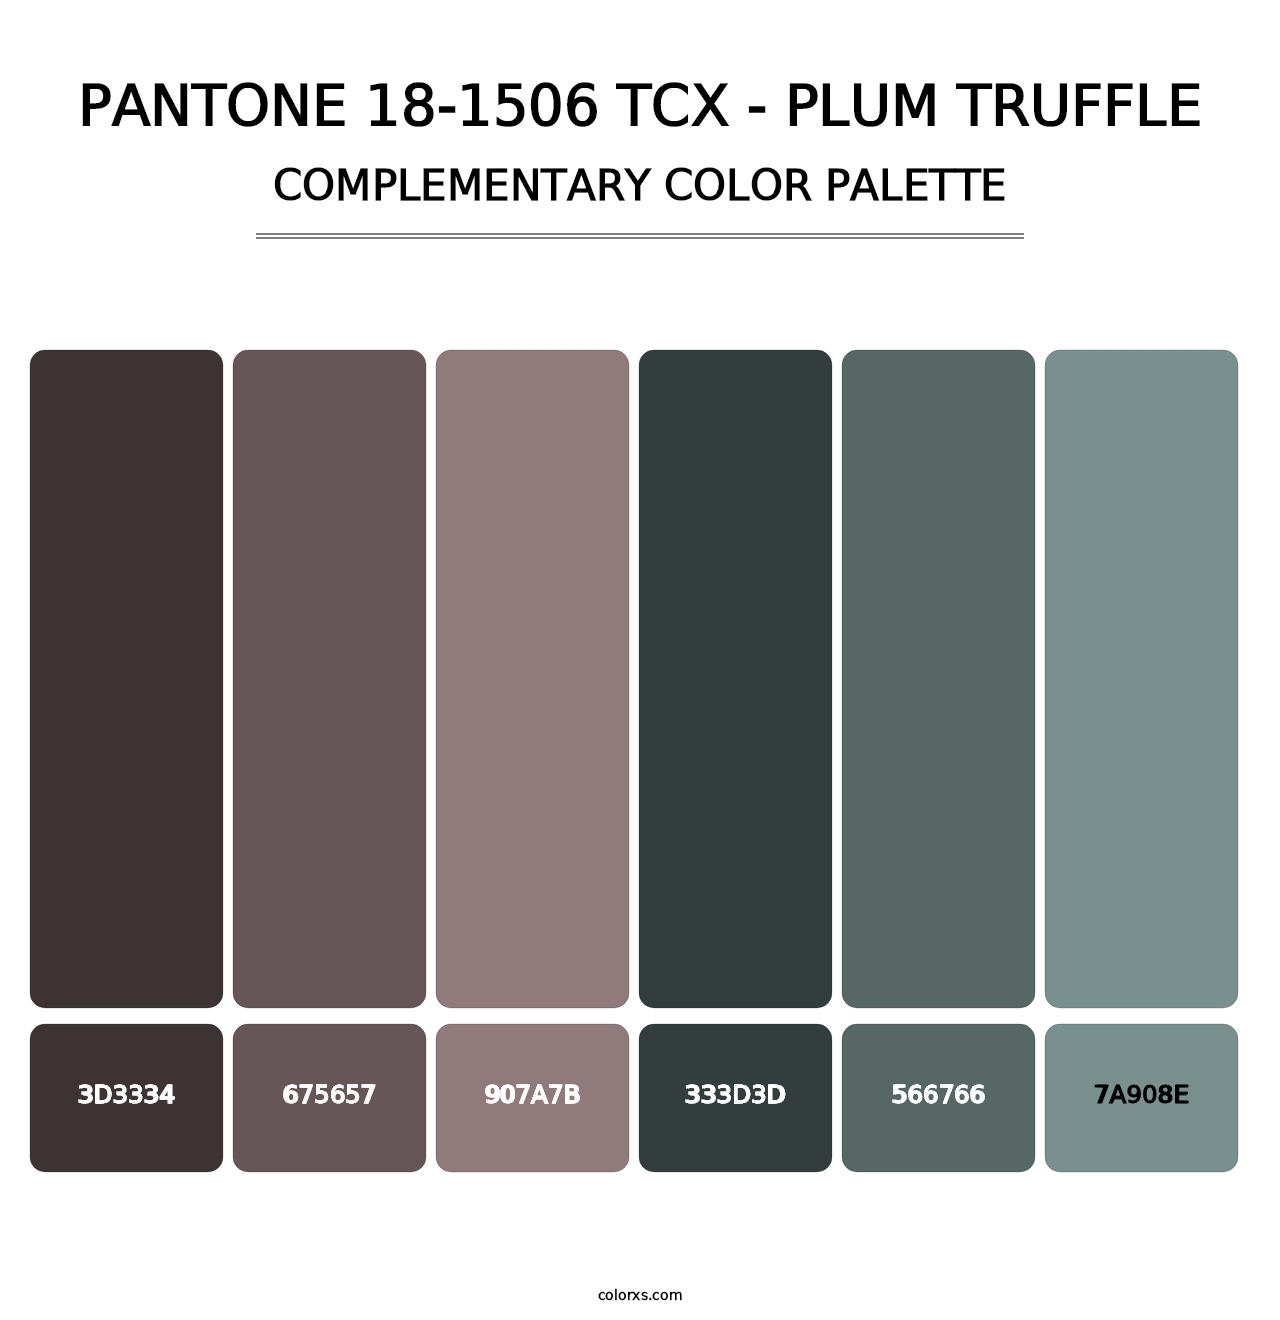 PANTONE 18-1506 TCX - Plum Truffle - Complementary Color Palette